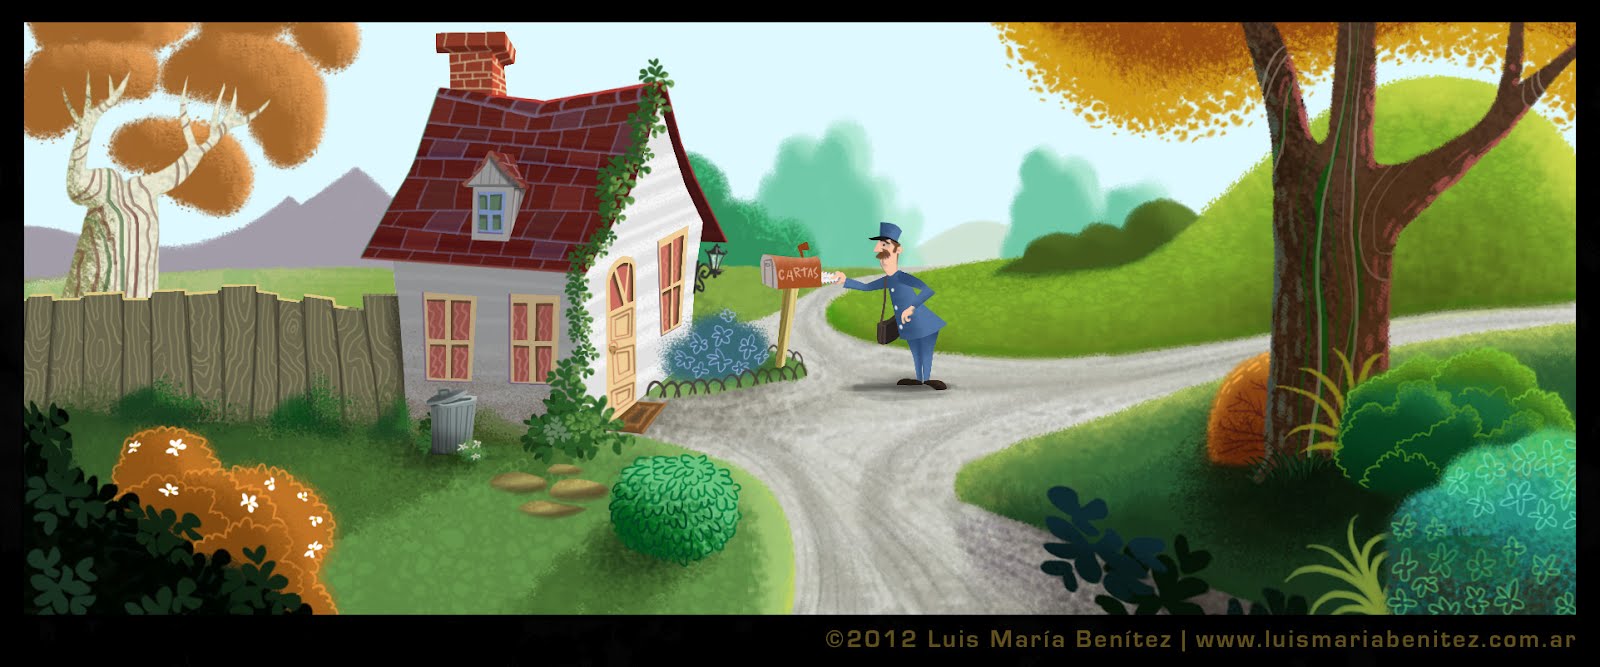 The mail man illustration / Ilustración del cartero © Luis María Benítez